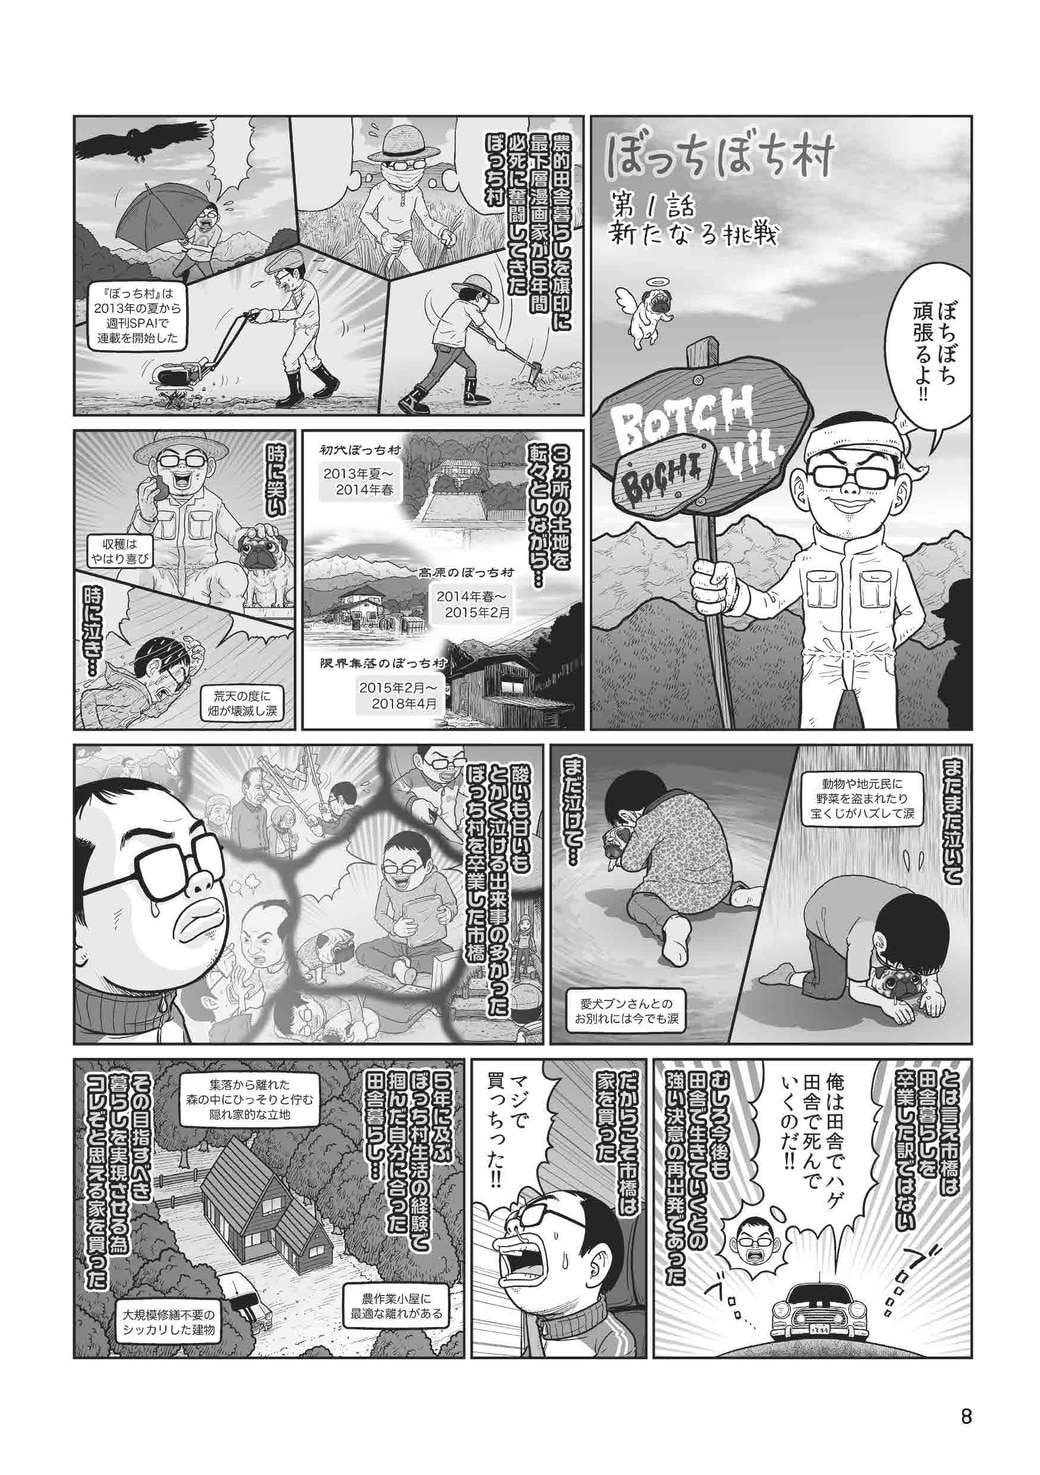 雑誌企画で 田舎移住 した漫画家の悲痛な叫び 漫画 東洋経済オンライン 経済ニュースの新基準